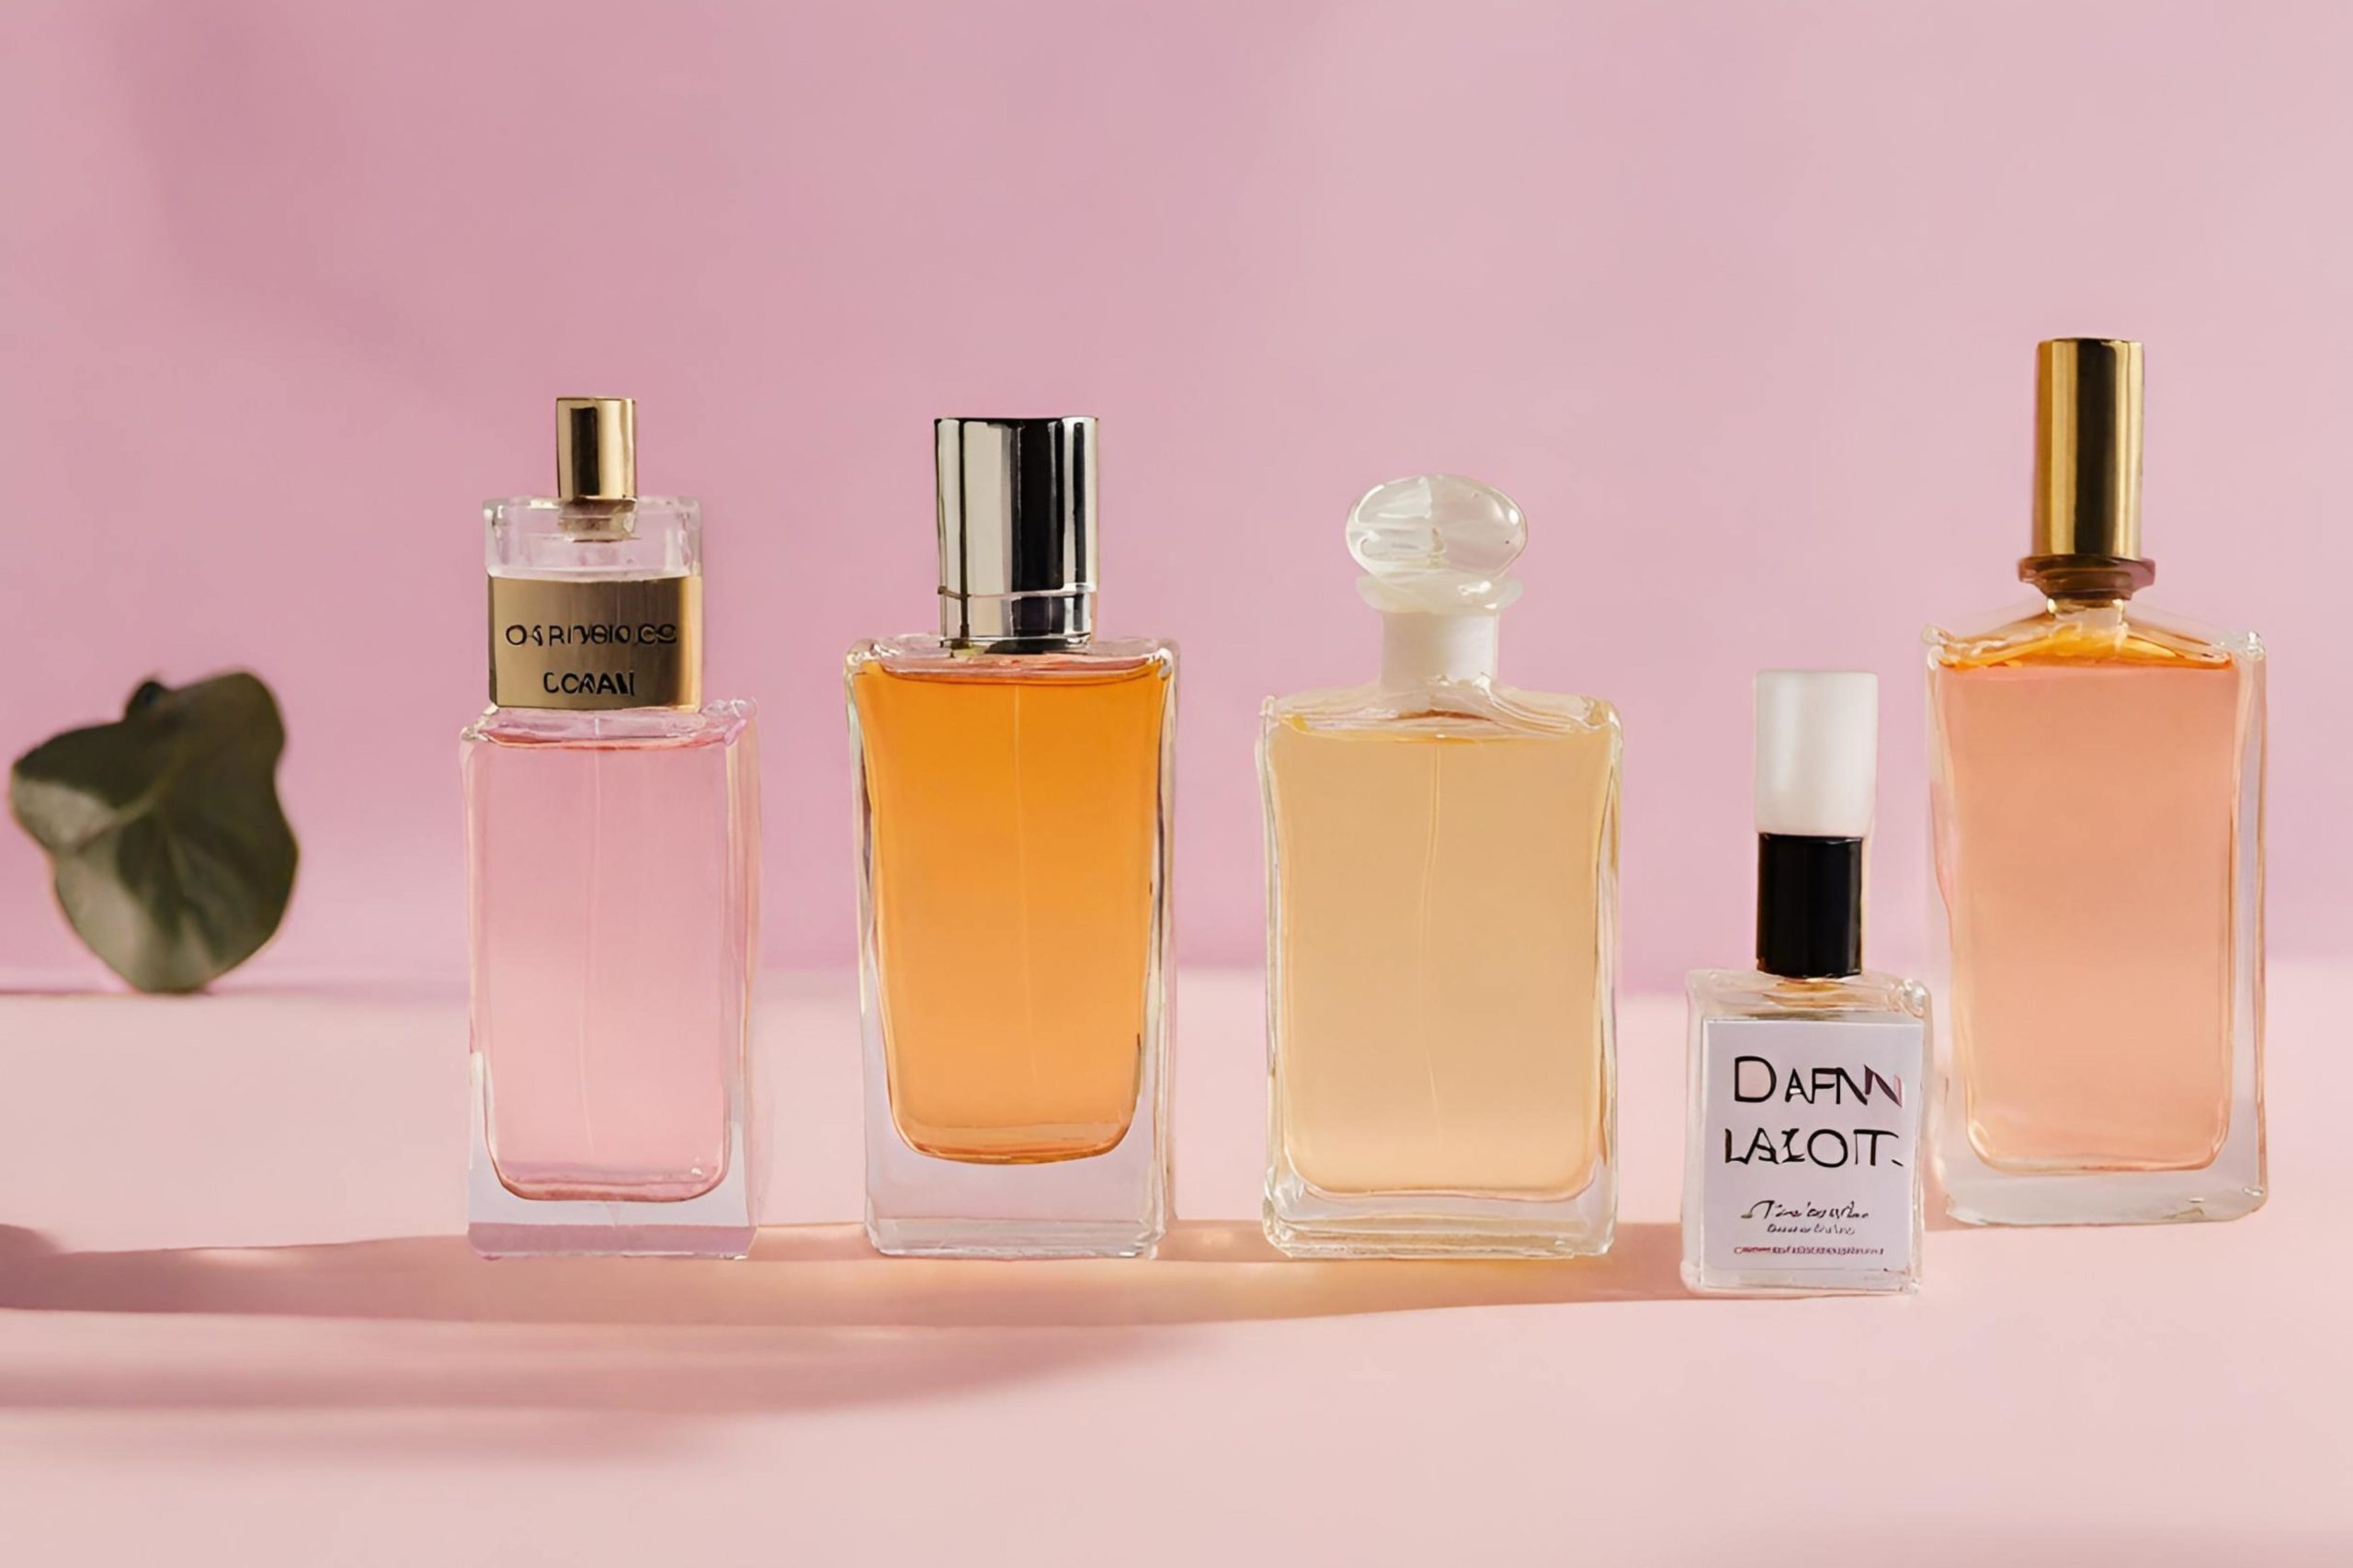 Melhores Perfumes Dior: 10 Ótimas Opções